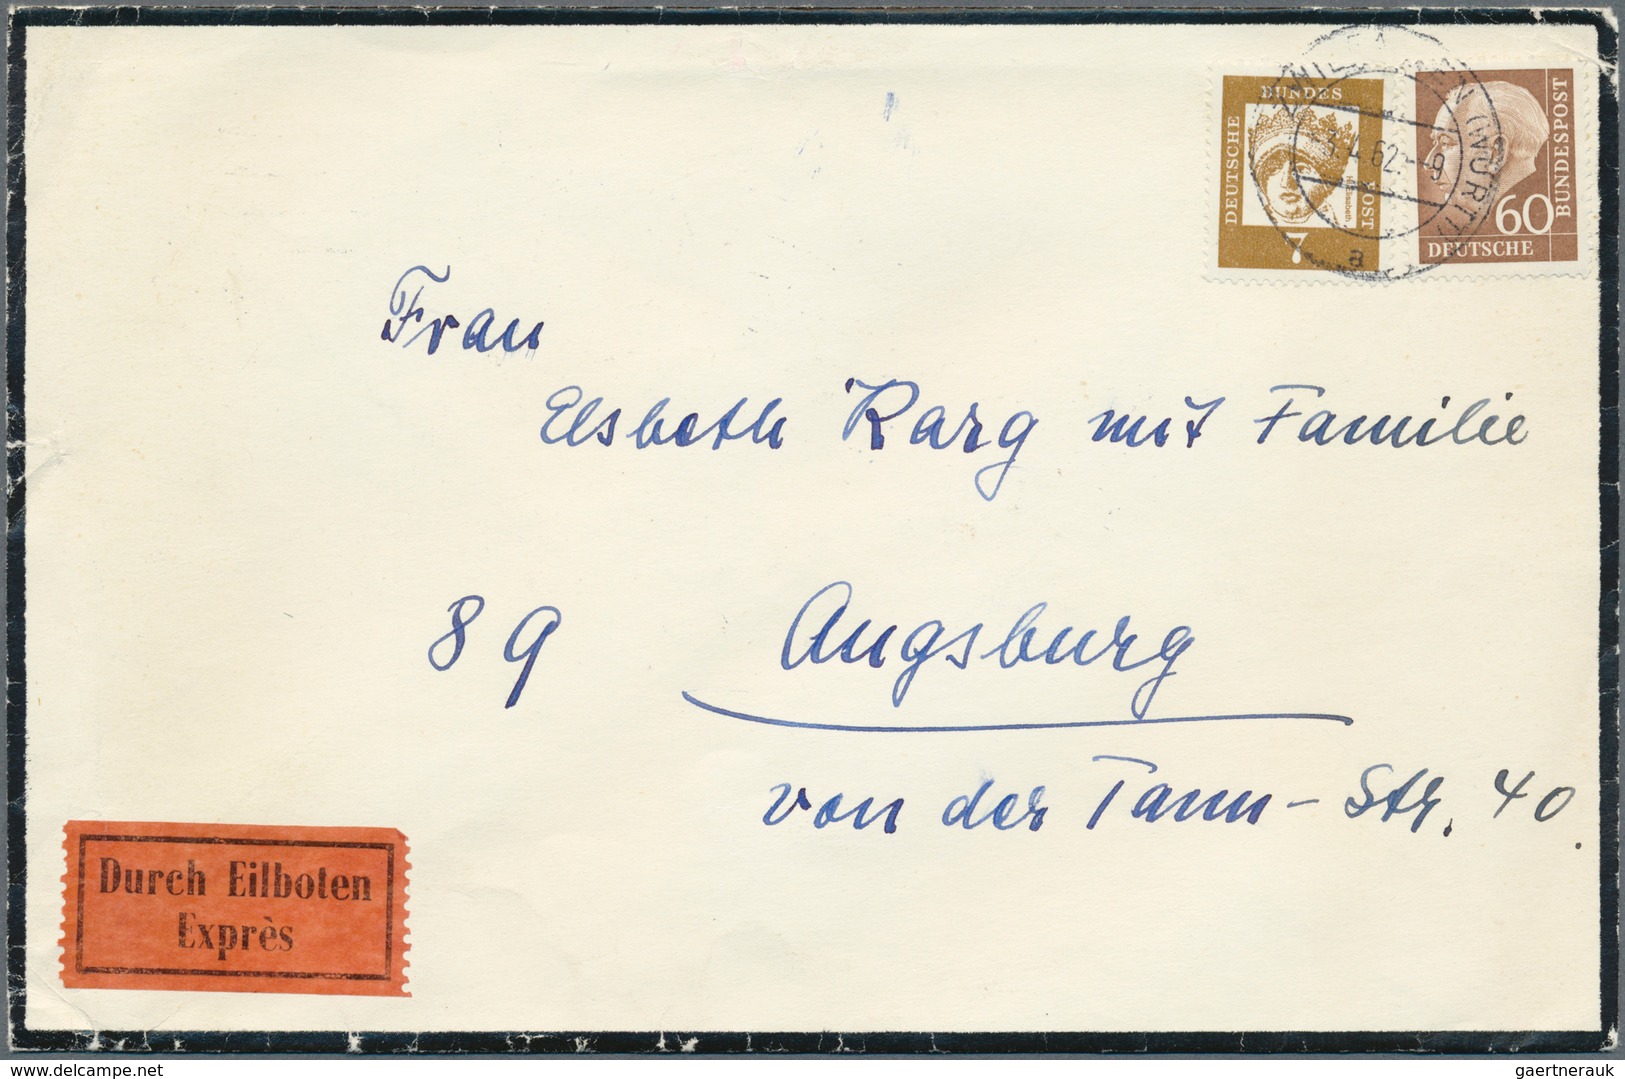 29956 Deutschland: 1949/1960 ca., reichhaltiger Posten mit über eintausend Belegen im grossen Bananenkarto